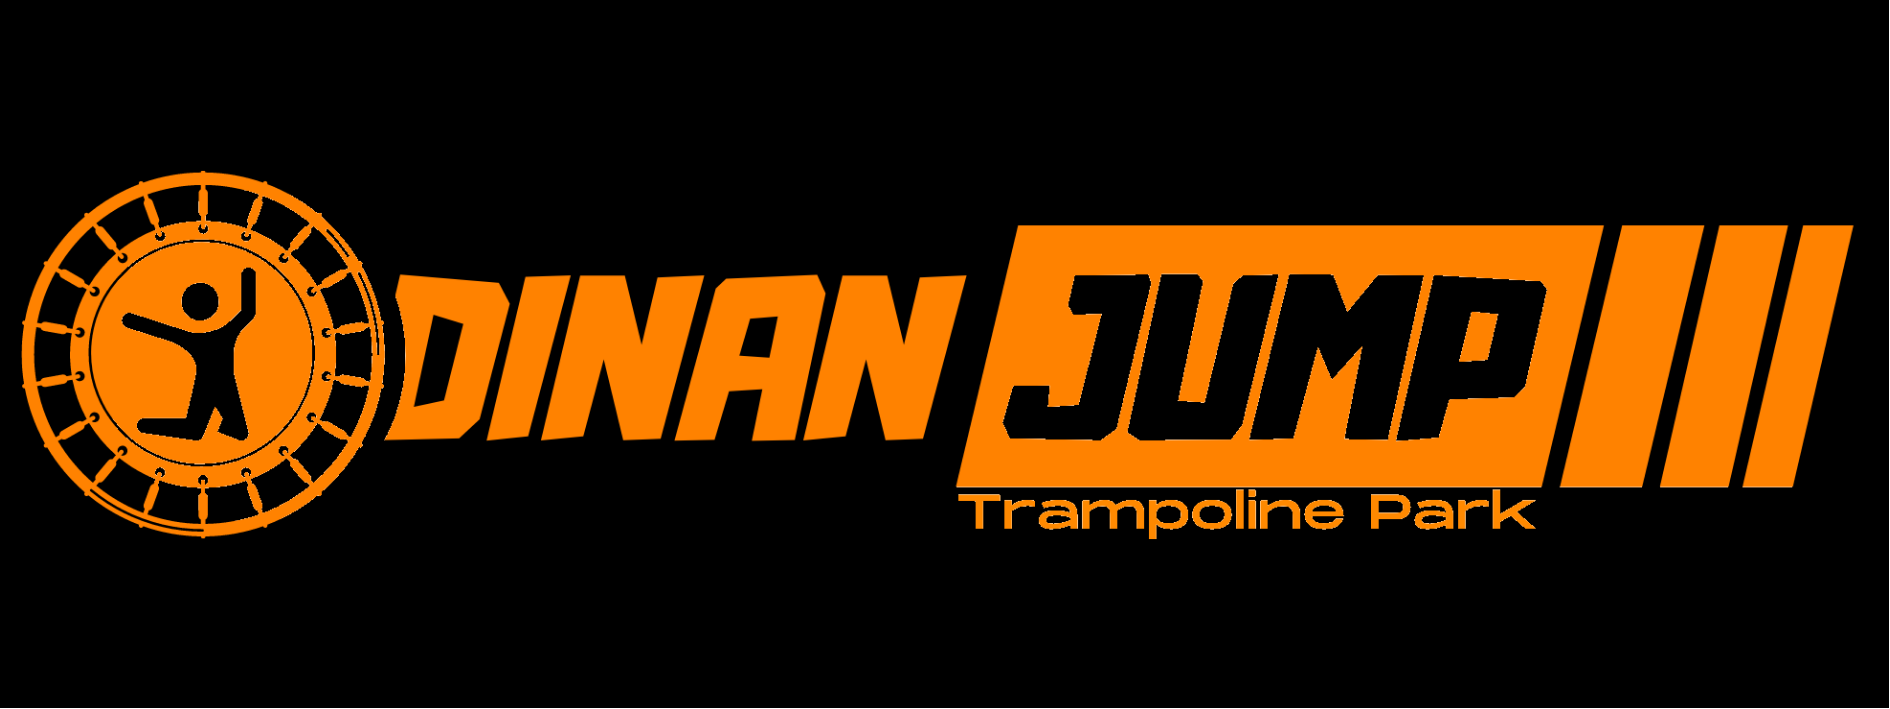 Dinan Jump, trampoline park - Dinan-Cap Fréhel Tourisme